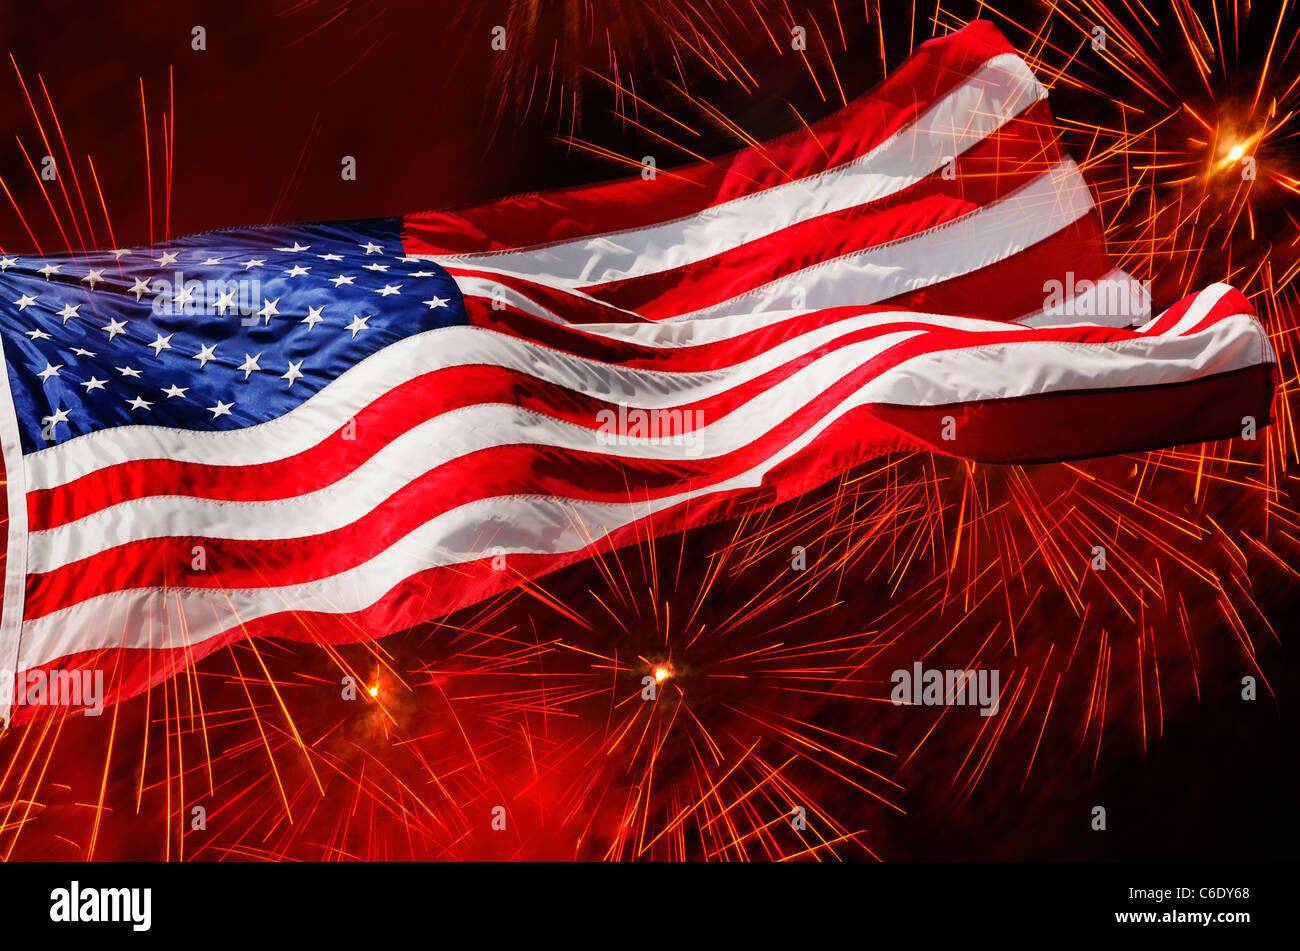 Stati Uniti d'America, New York New York City, quarto di luglio Fireworks con bandiera americana Foto Stock